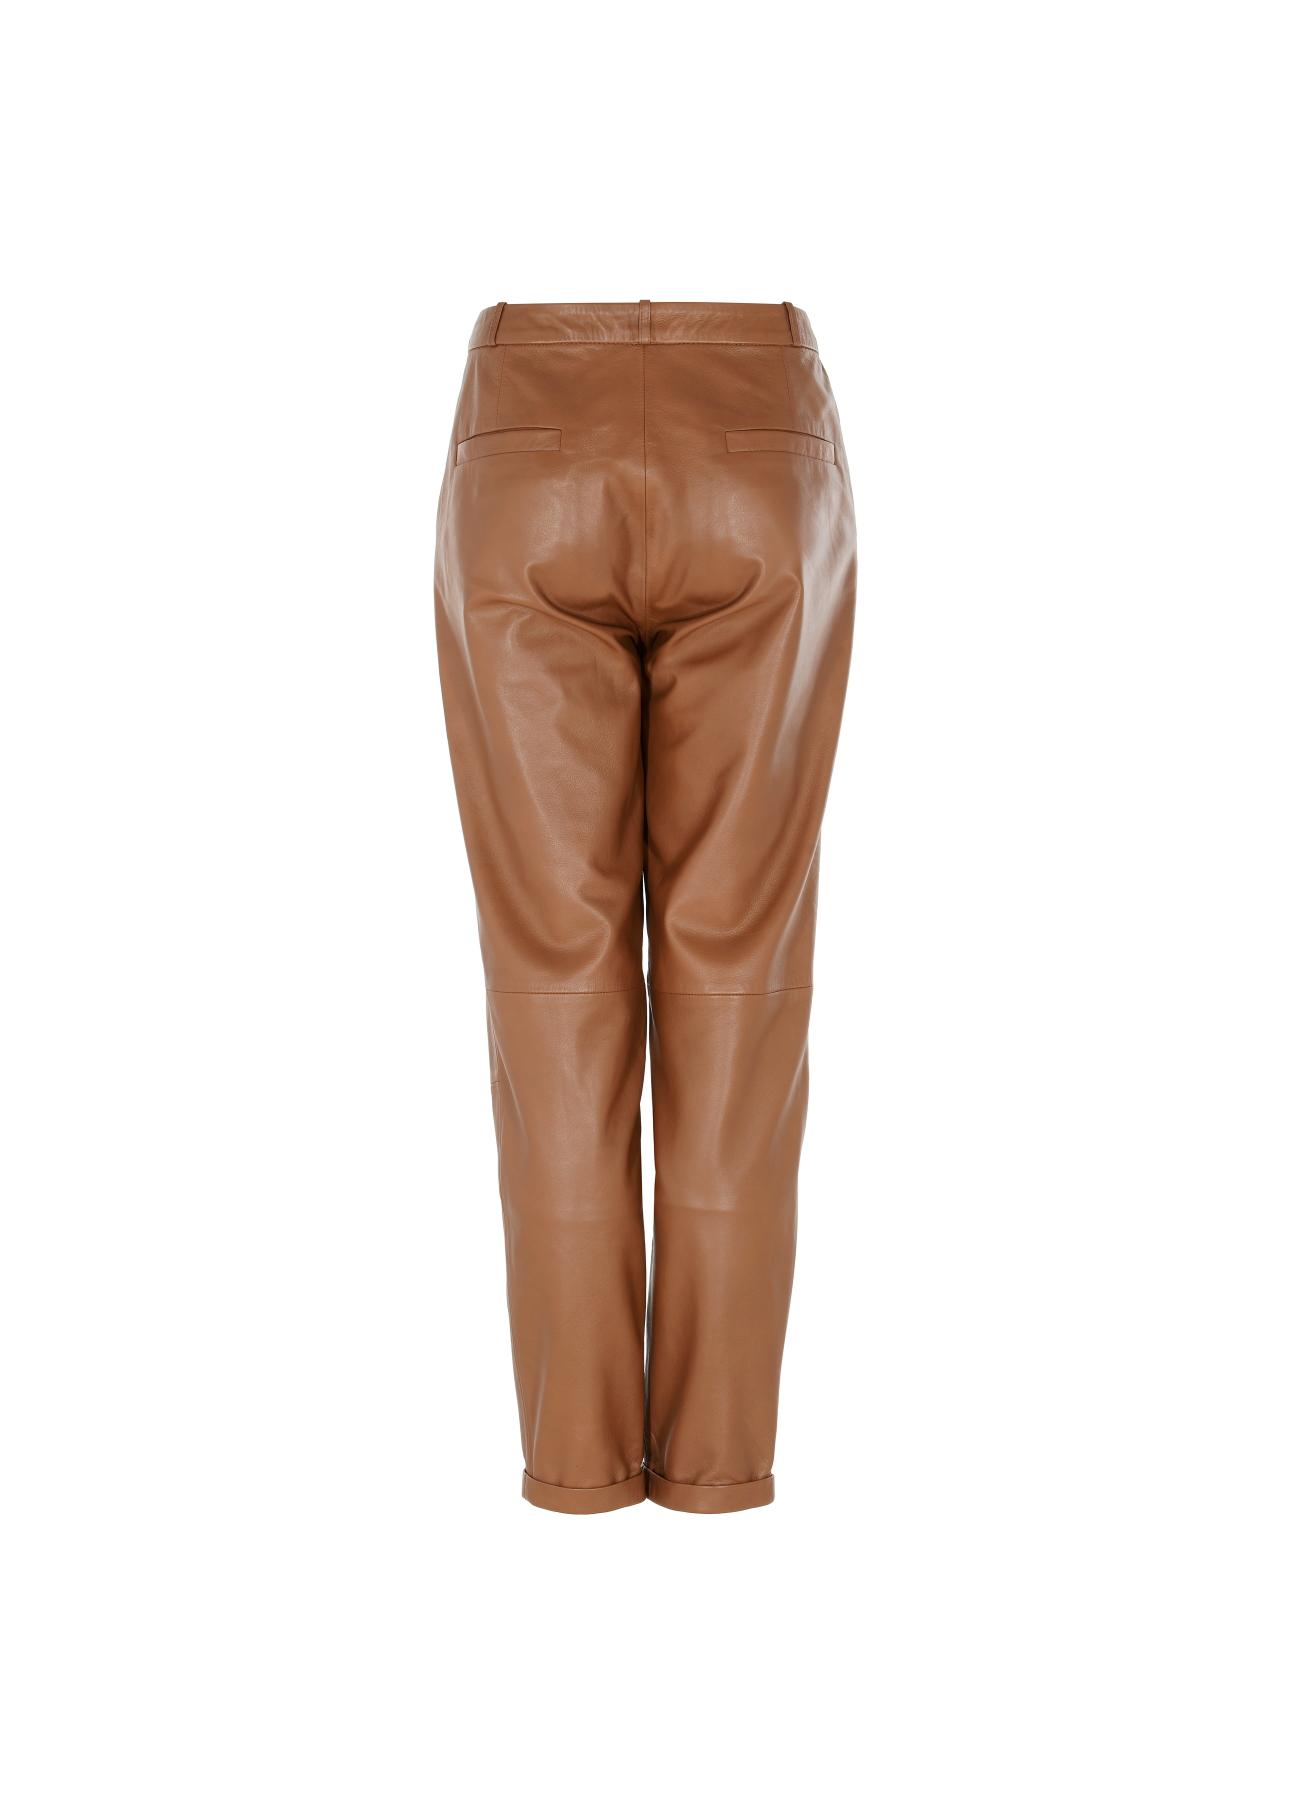 Spodnie skórzane karmelowe damskie SPODS-0022-1103(W22)-04